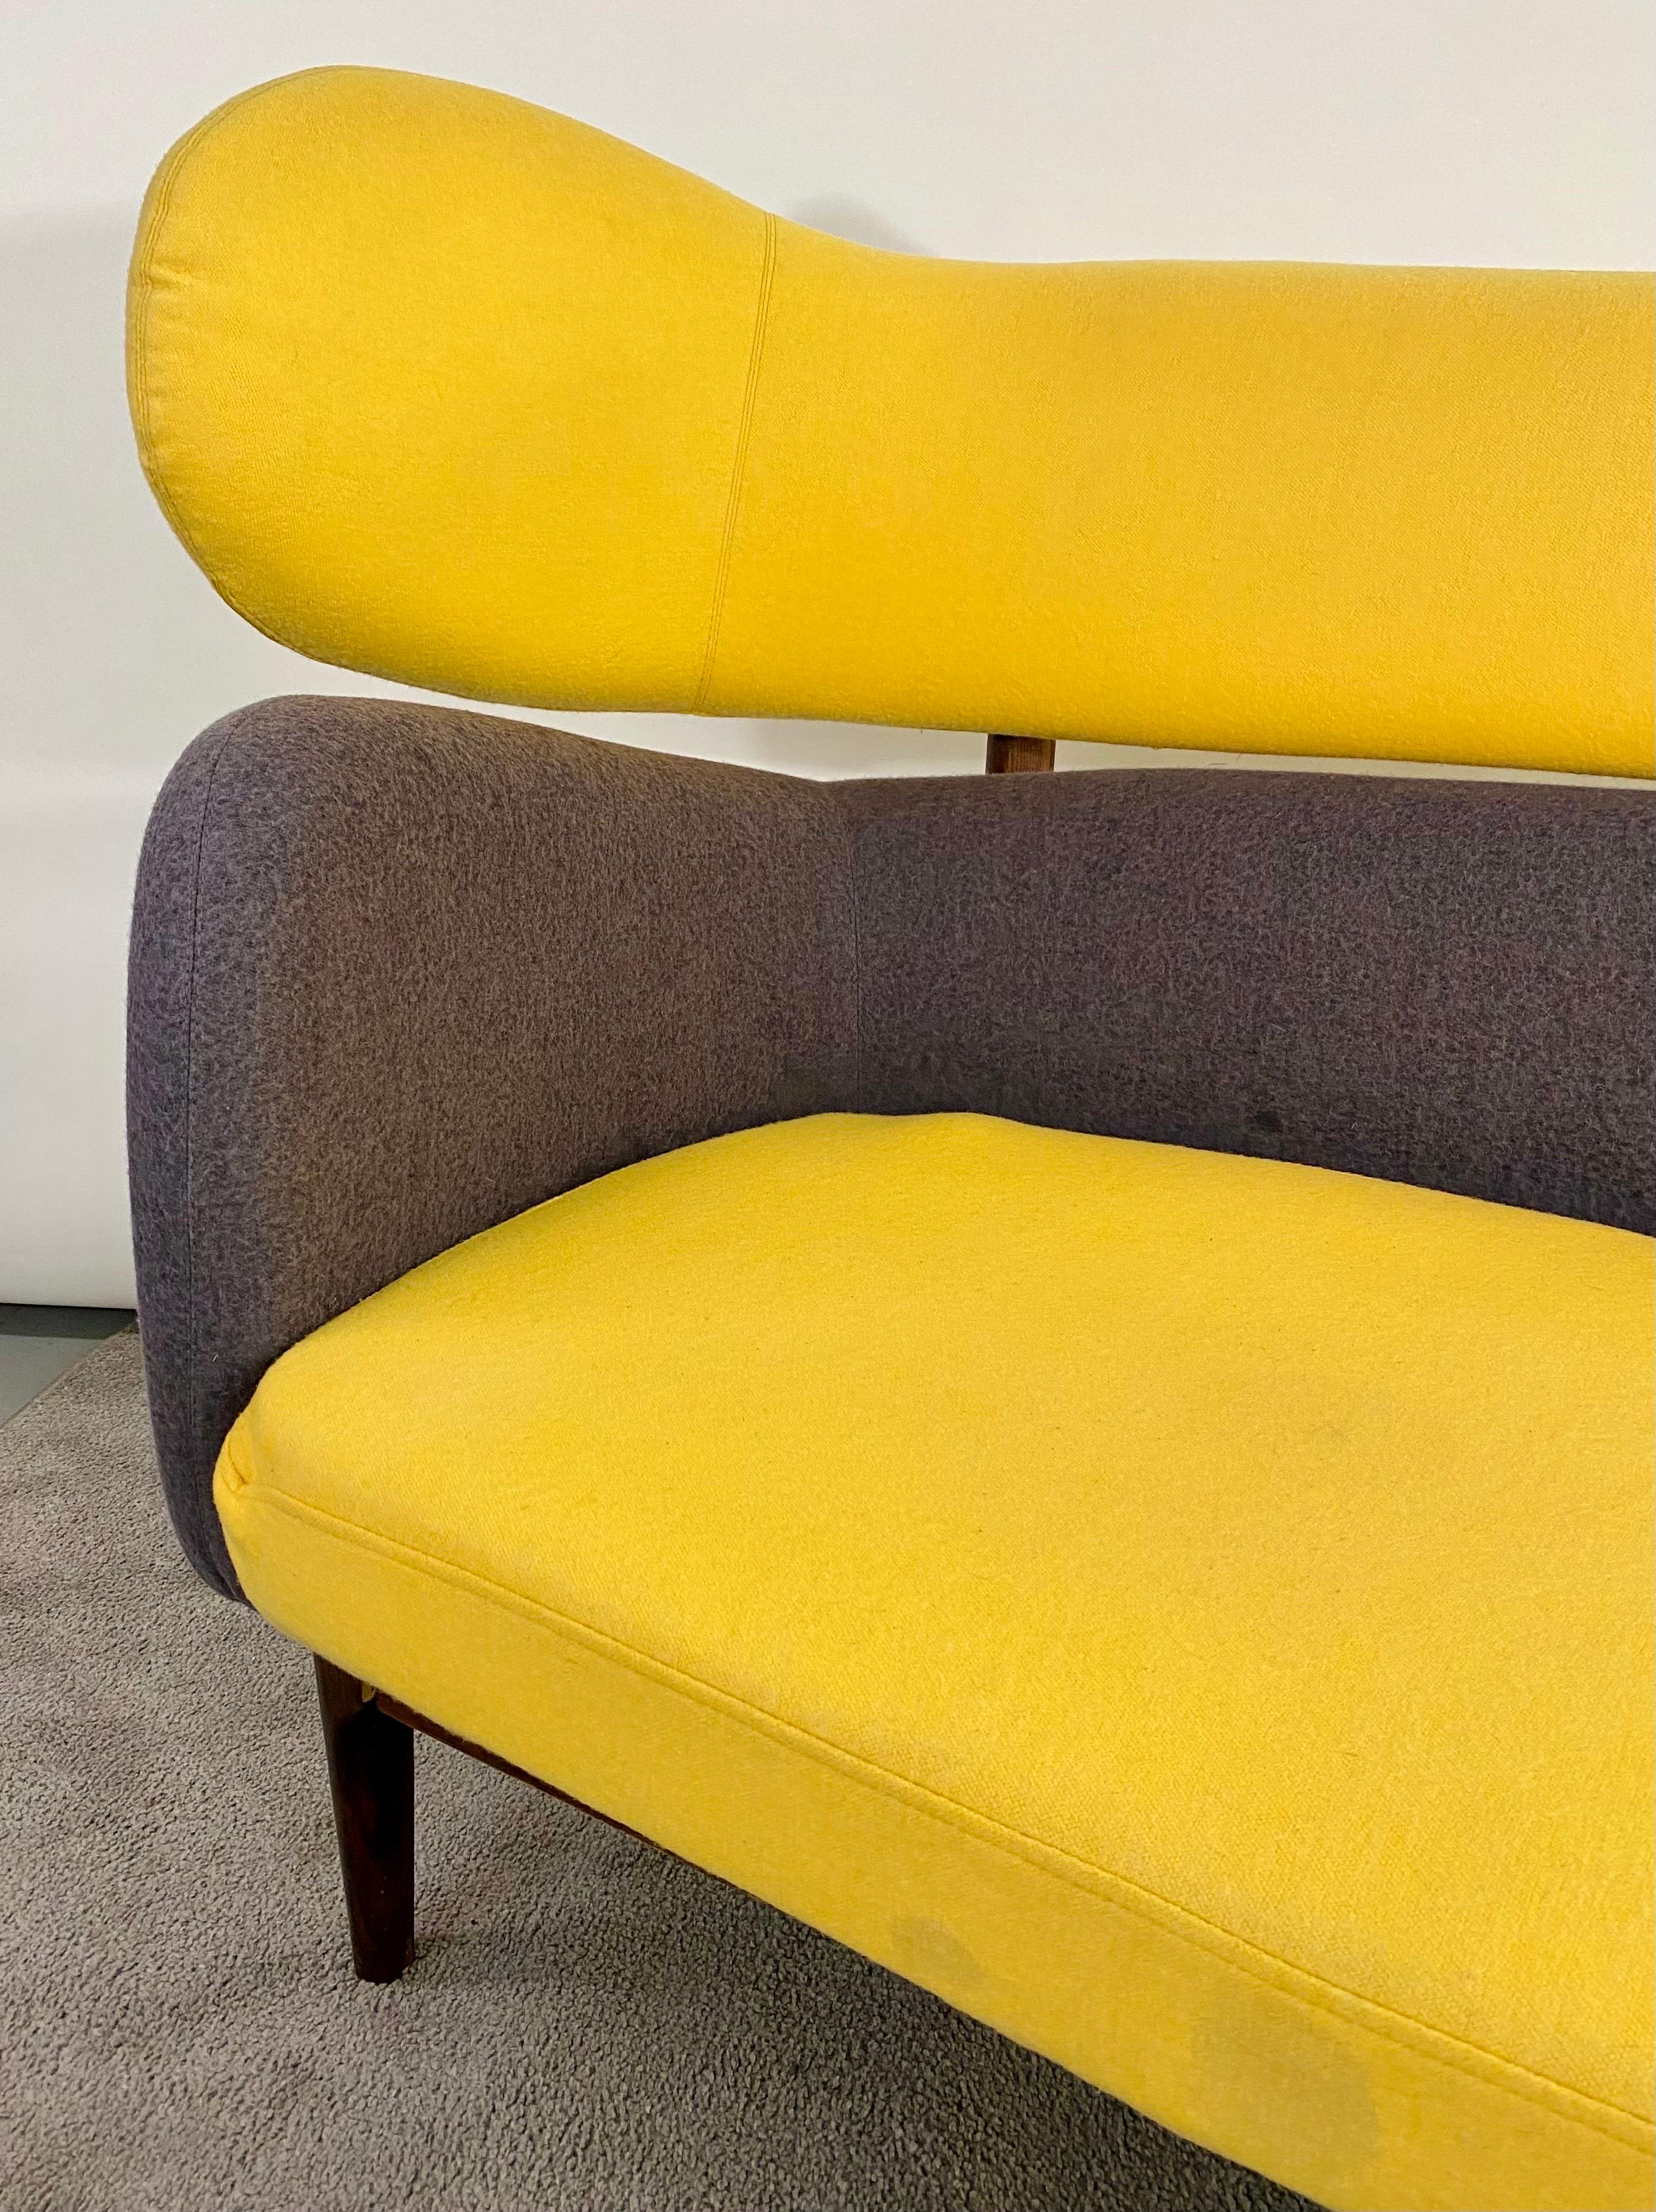 Un canapé intemporel de style moderne du milieu du siècle dernier, attribué à...  Finn Juhl ( danois 1912- 1989) pour Baker. Ce canapé présente une forme sculpturale inspirée de l'art libre moderne. L'assise et le dossier du canapé sont séparés,